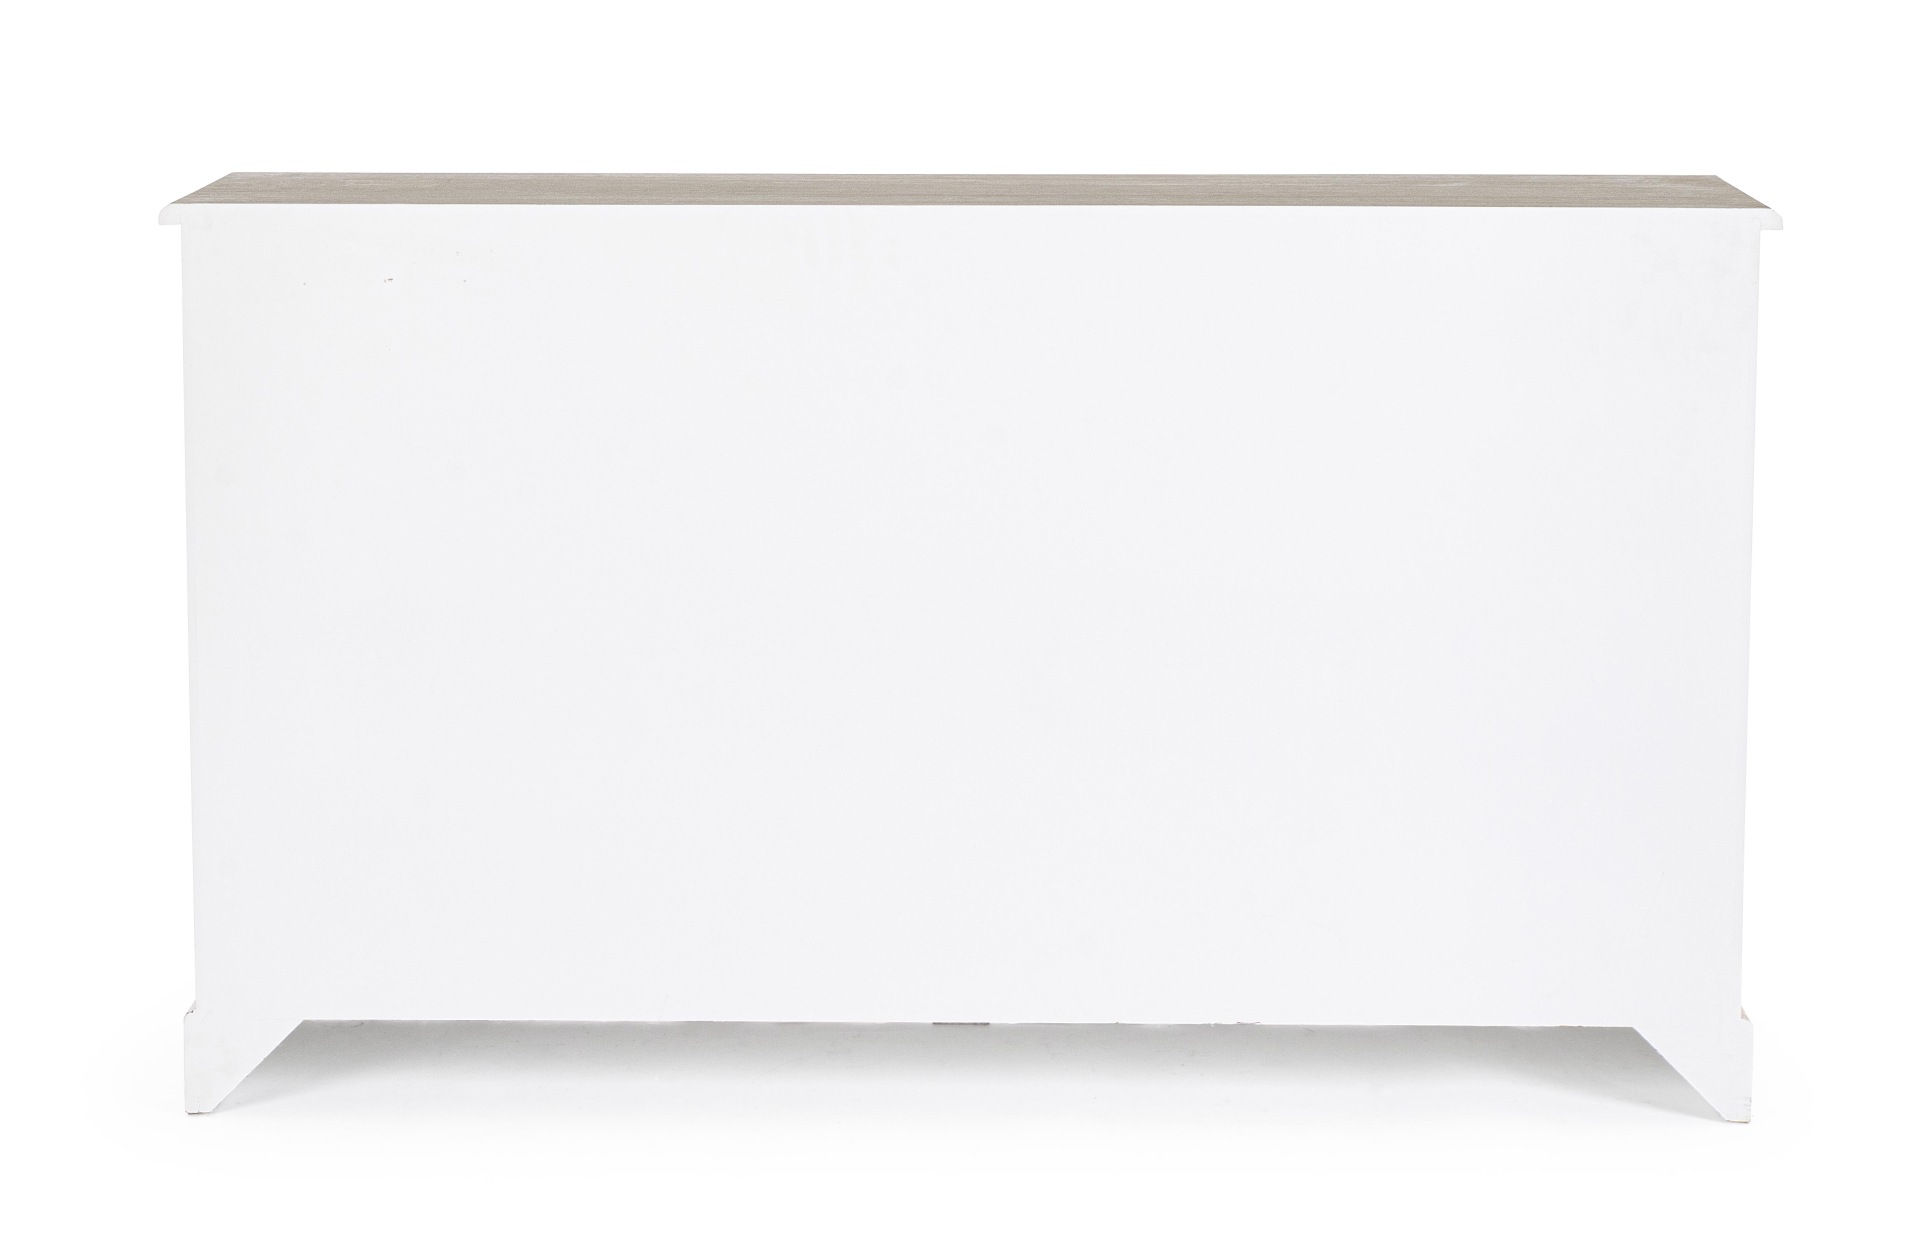 Die Kommode Dorotea überzeugt mit ihrem klassischen Design. Gefertigt wurde sie aus MDF, welches einen weißen Farbton besitzt. Die Oberflächenplatte ist aus Paulownia-Holz. Die Kommode verfügt über zwei Türen und sechs Schubladen. Die Breite beträgt 150 c